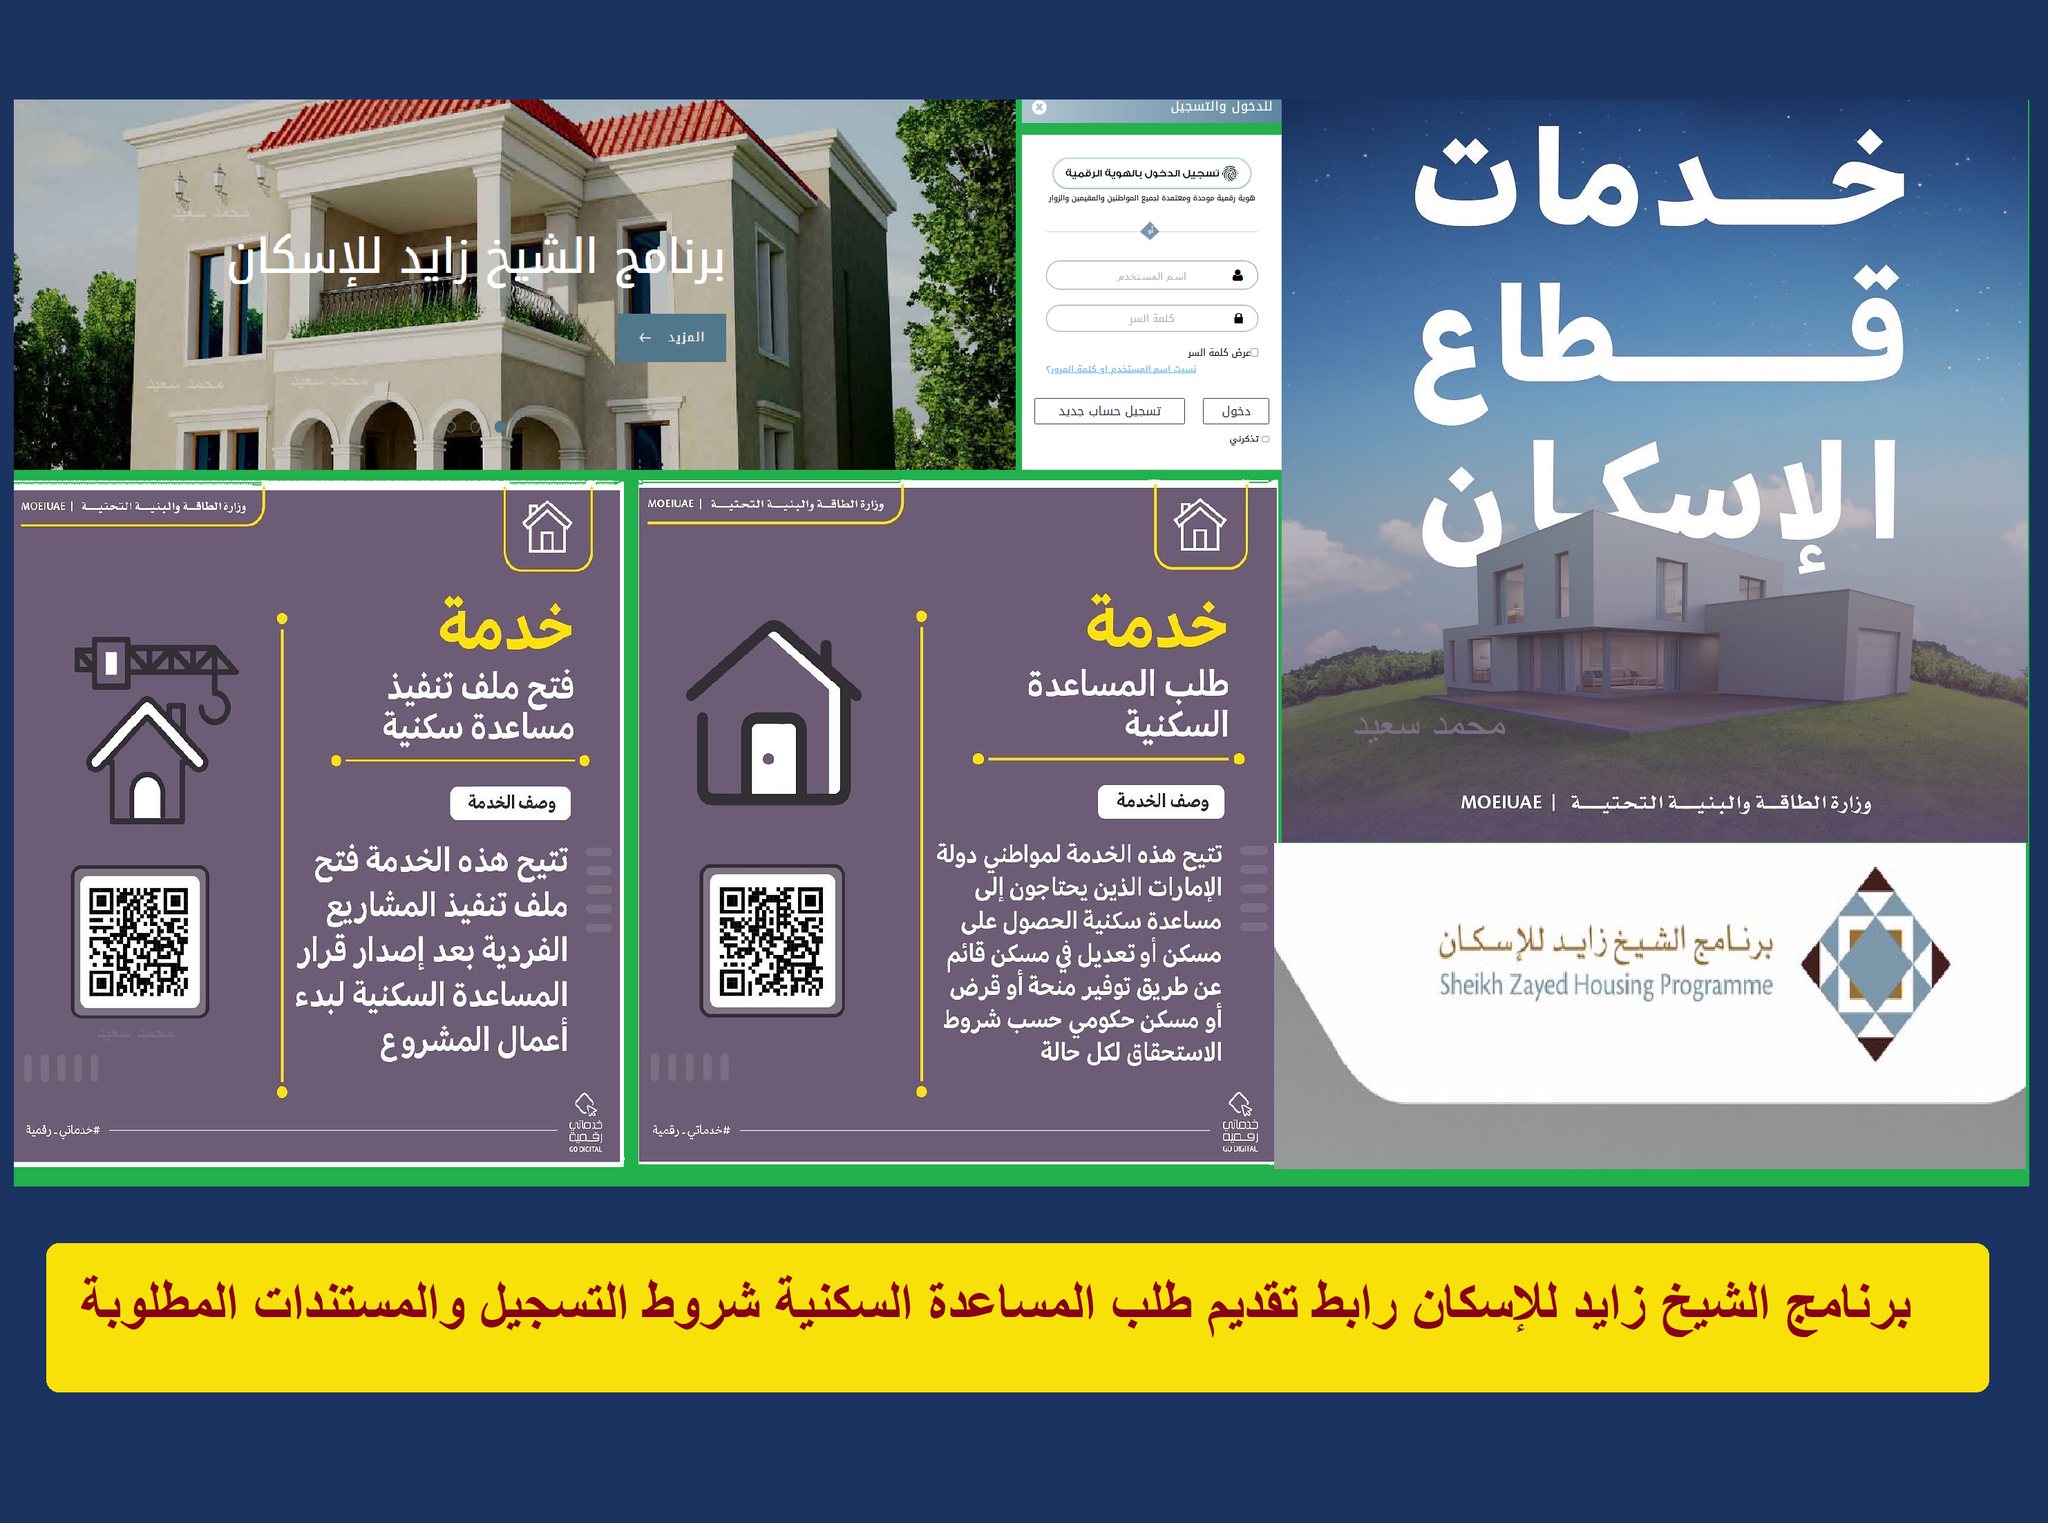 رابط تسجيل برنامج الشيخ زايد للإسكان "szhp.gov.ae" شروط مطلبات تقديم طلب مساعدة سكنية